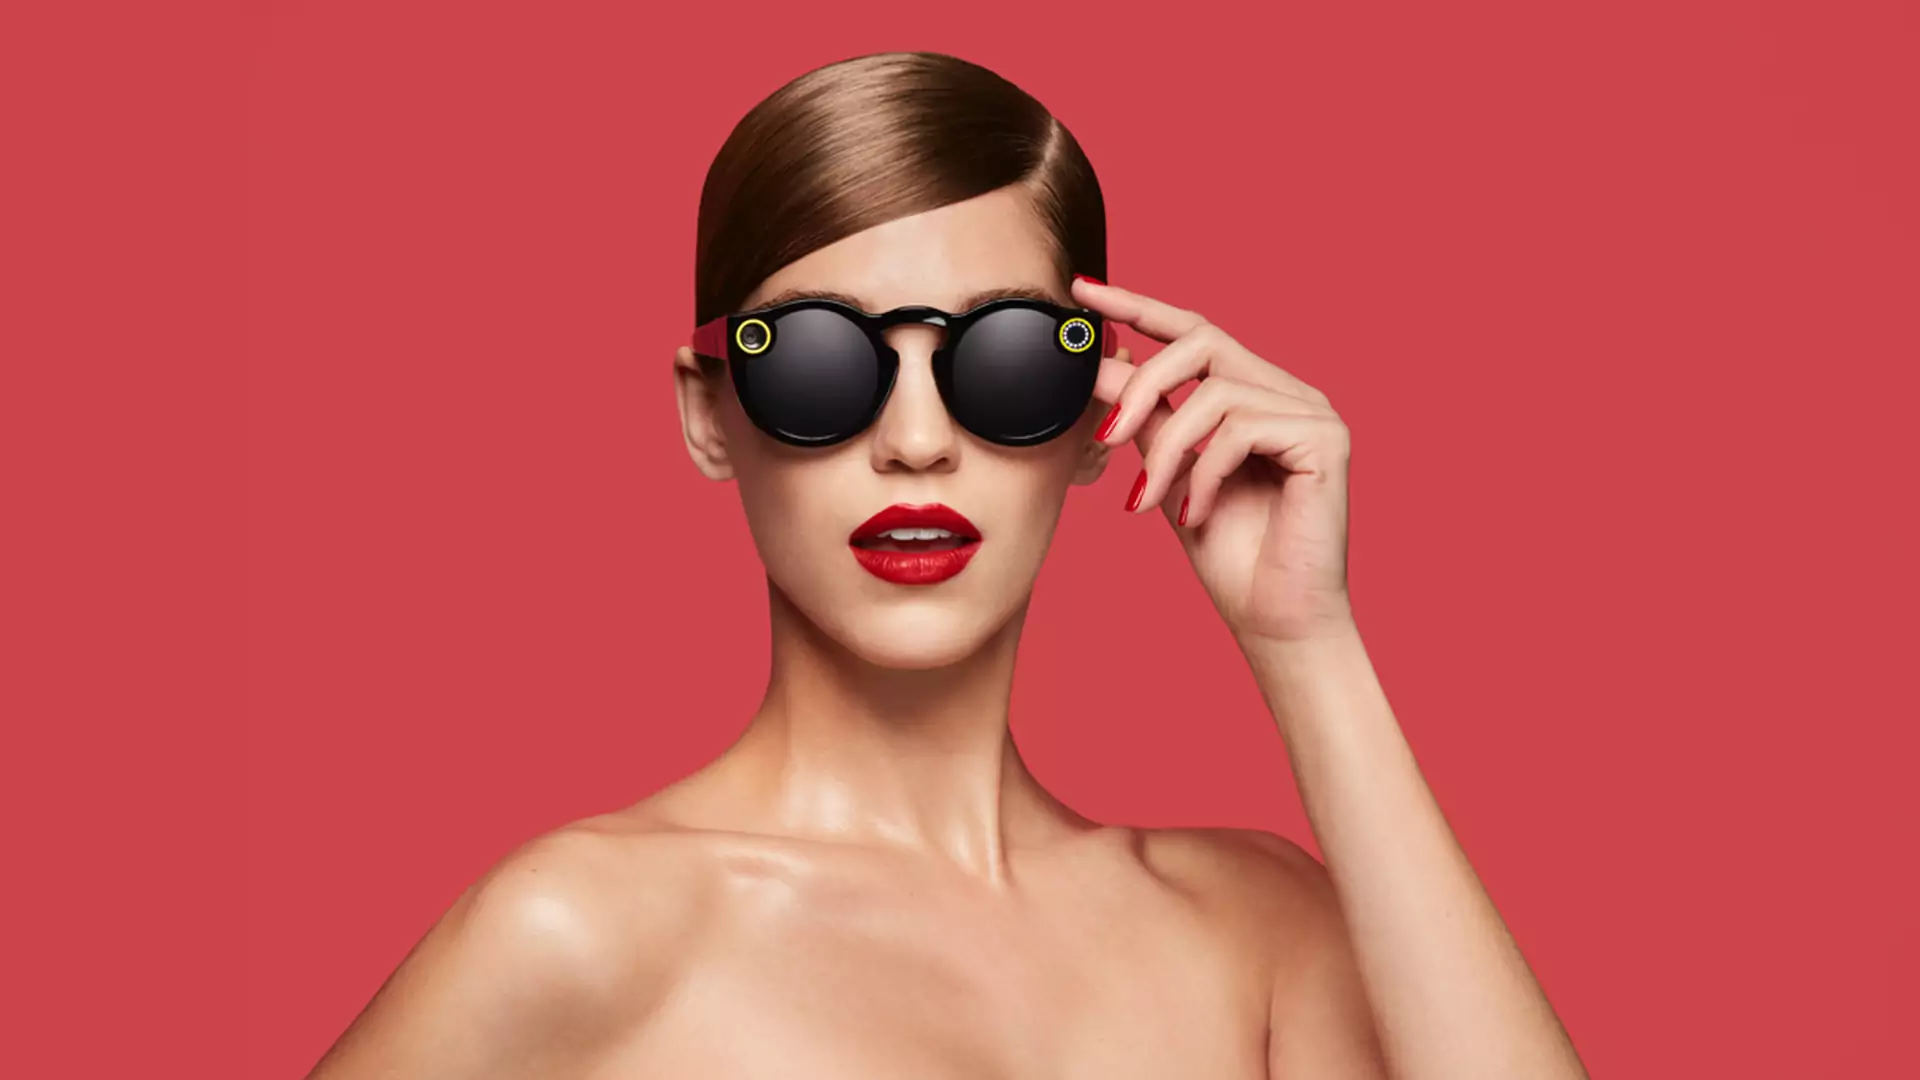 Okulary Snapchat Spectacles nareszcie w Europie! Nie są tanie